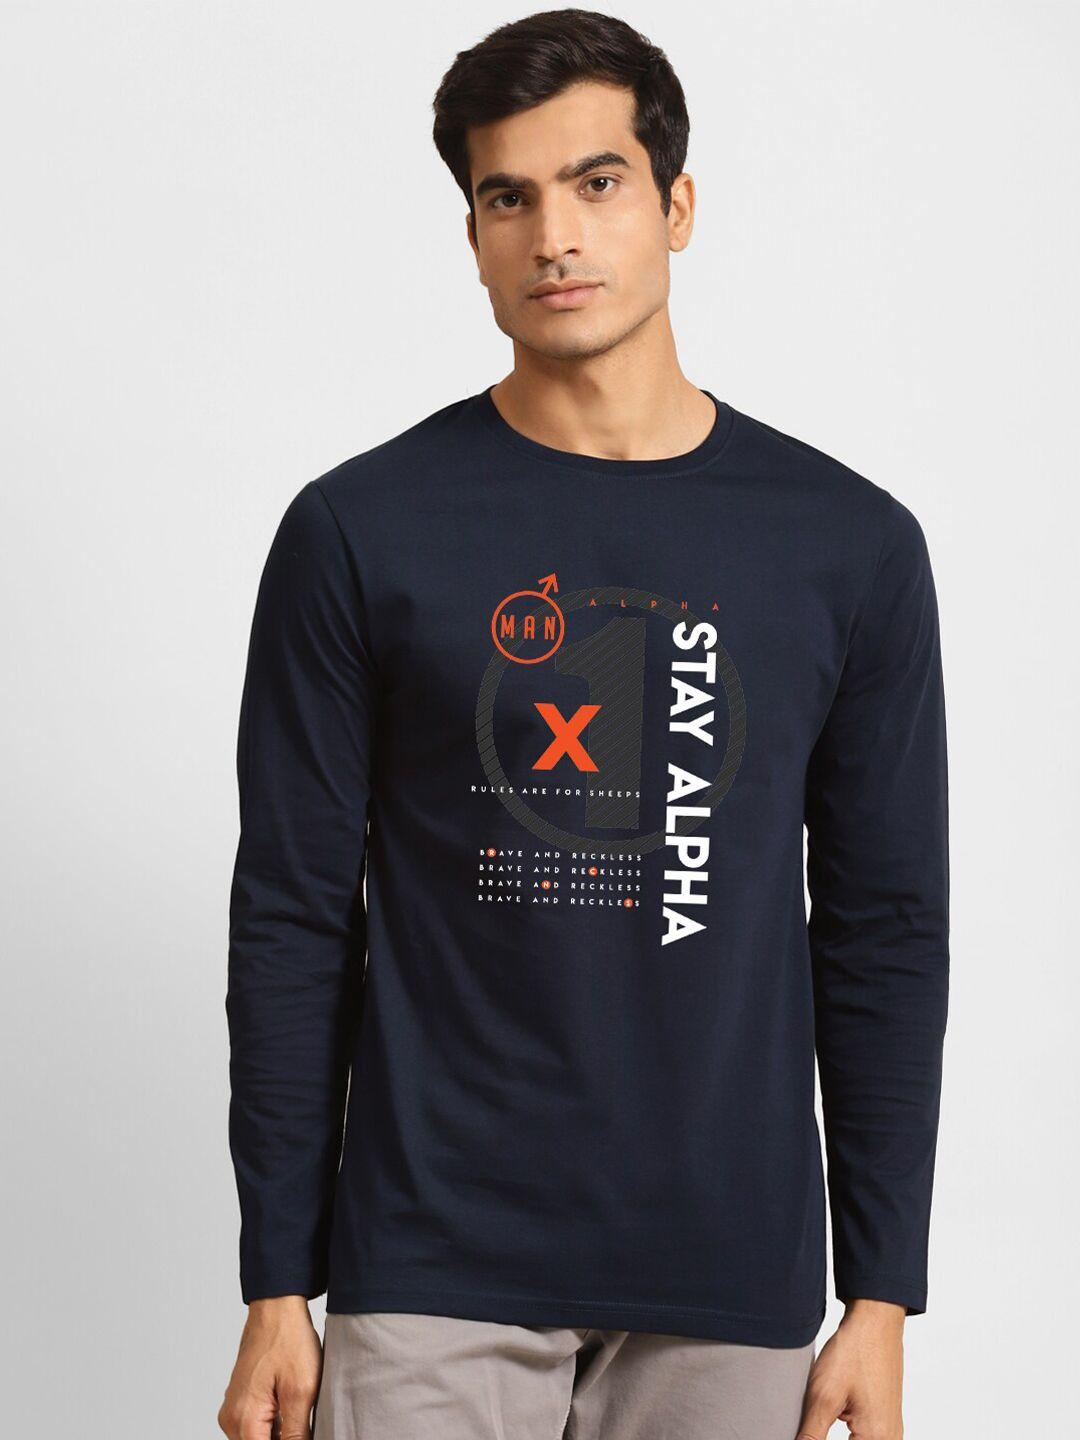 bewakoof-men-navy-blue-&-white-typography-printed-t-shirt